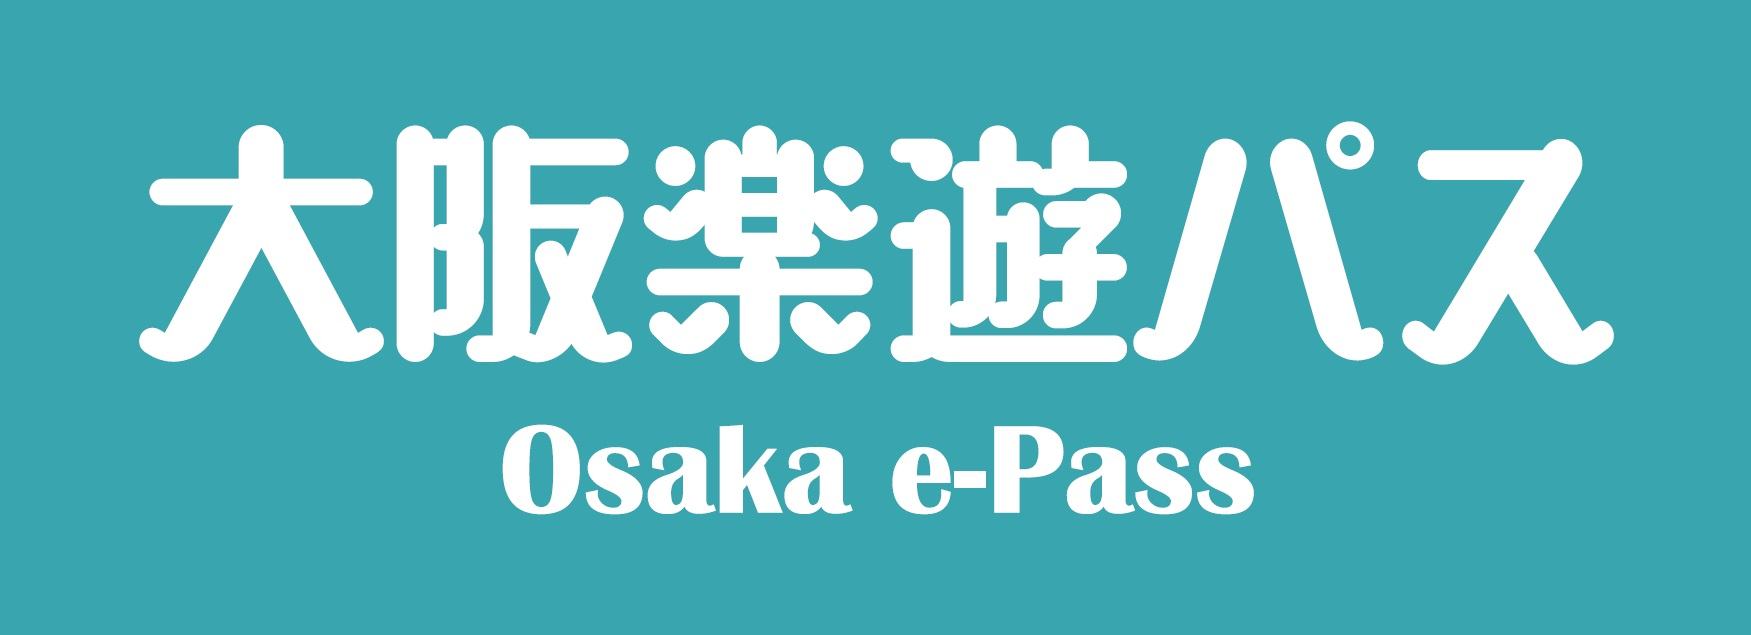 Osaka e-pass